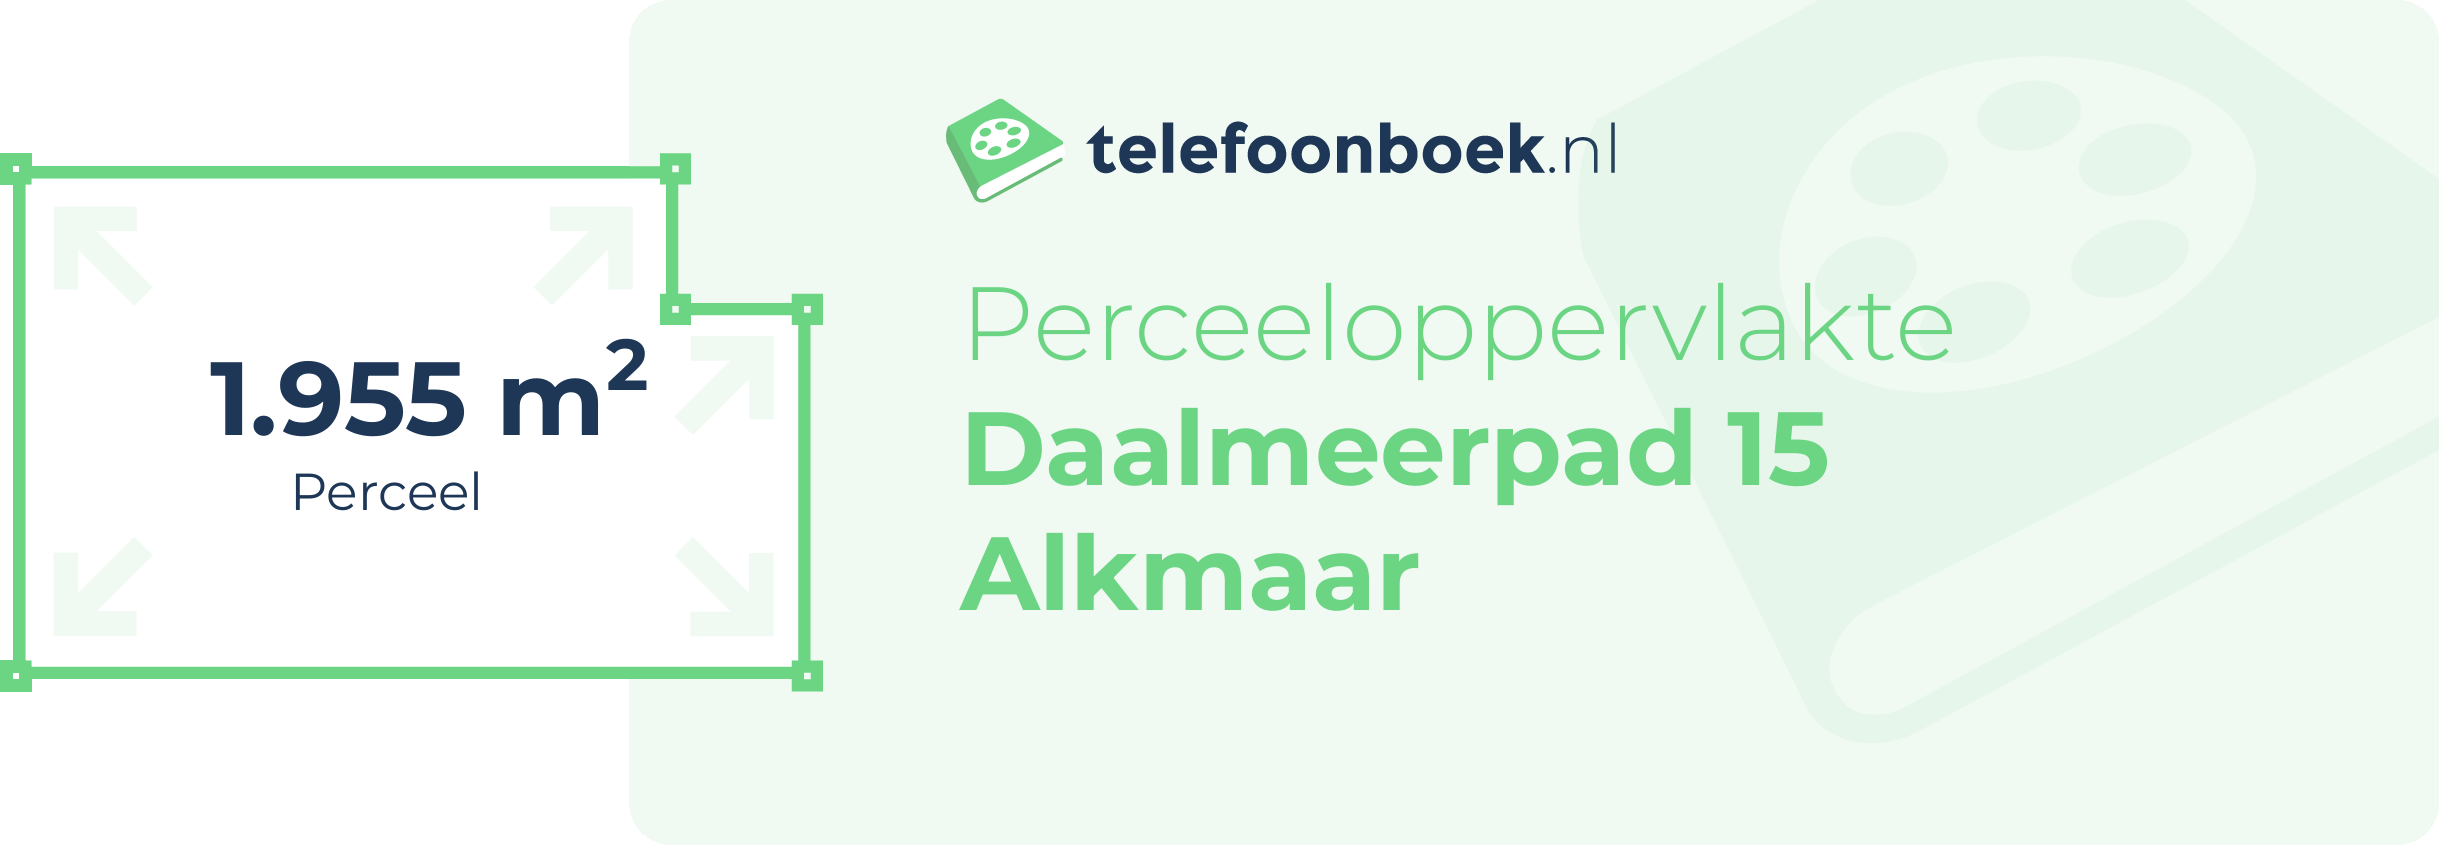 Perceeloppervlakte Daalmeerpad 15 Alkmaar